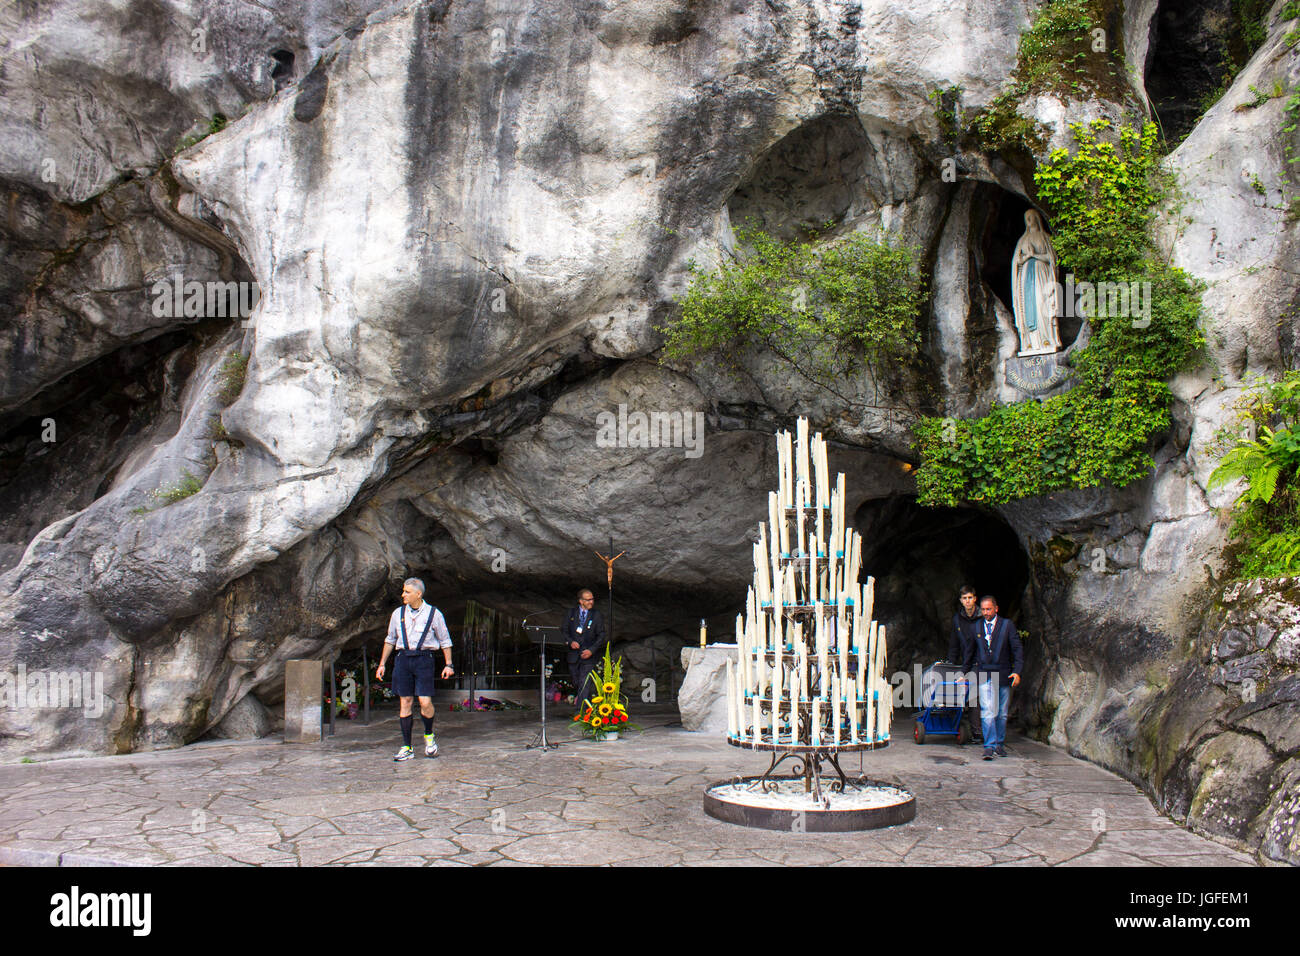 Le sanctuaire de Notre Dame de Lourdes, une destination de pèlerinage en France célèbre pour le pouvoir de guérison de ses eaux. Banque D'Images